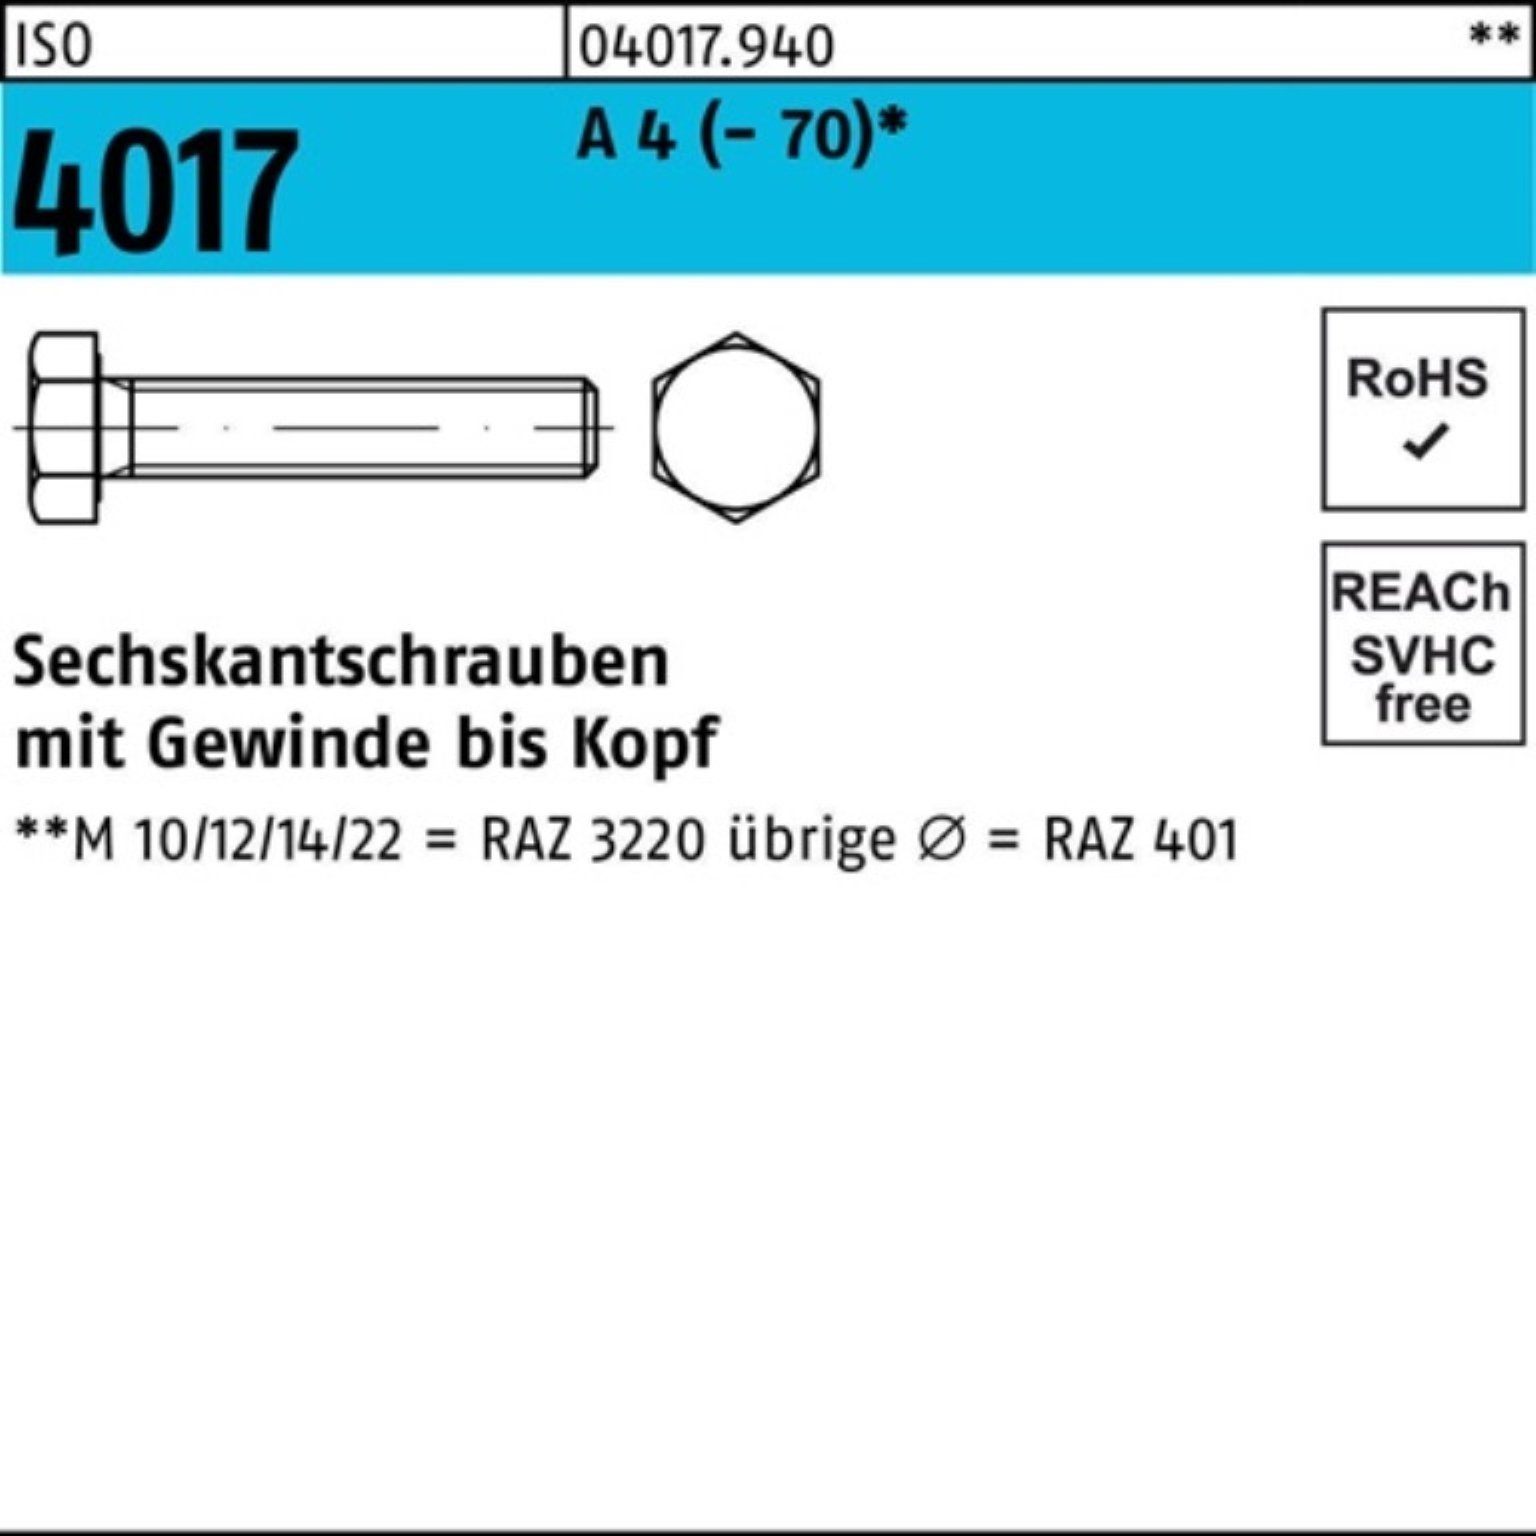 Bufab Sechskantschraube 100er Pack Sechskantschraube ISO 4017 VG M16x 200 A 4 (70) 1 Stück